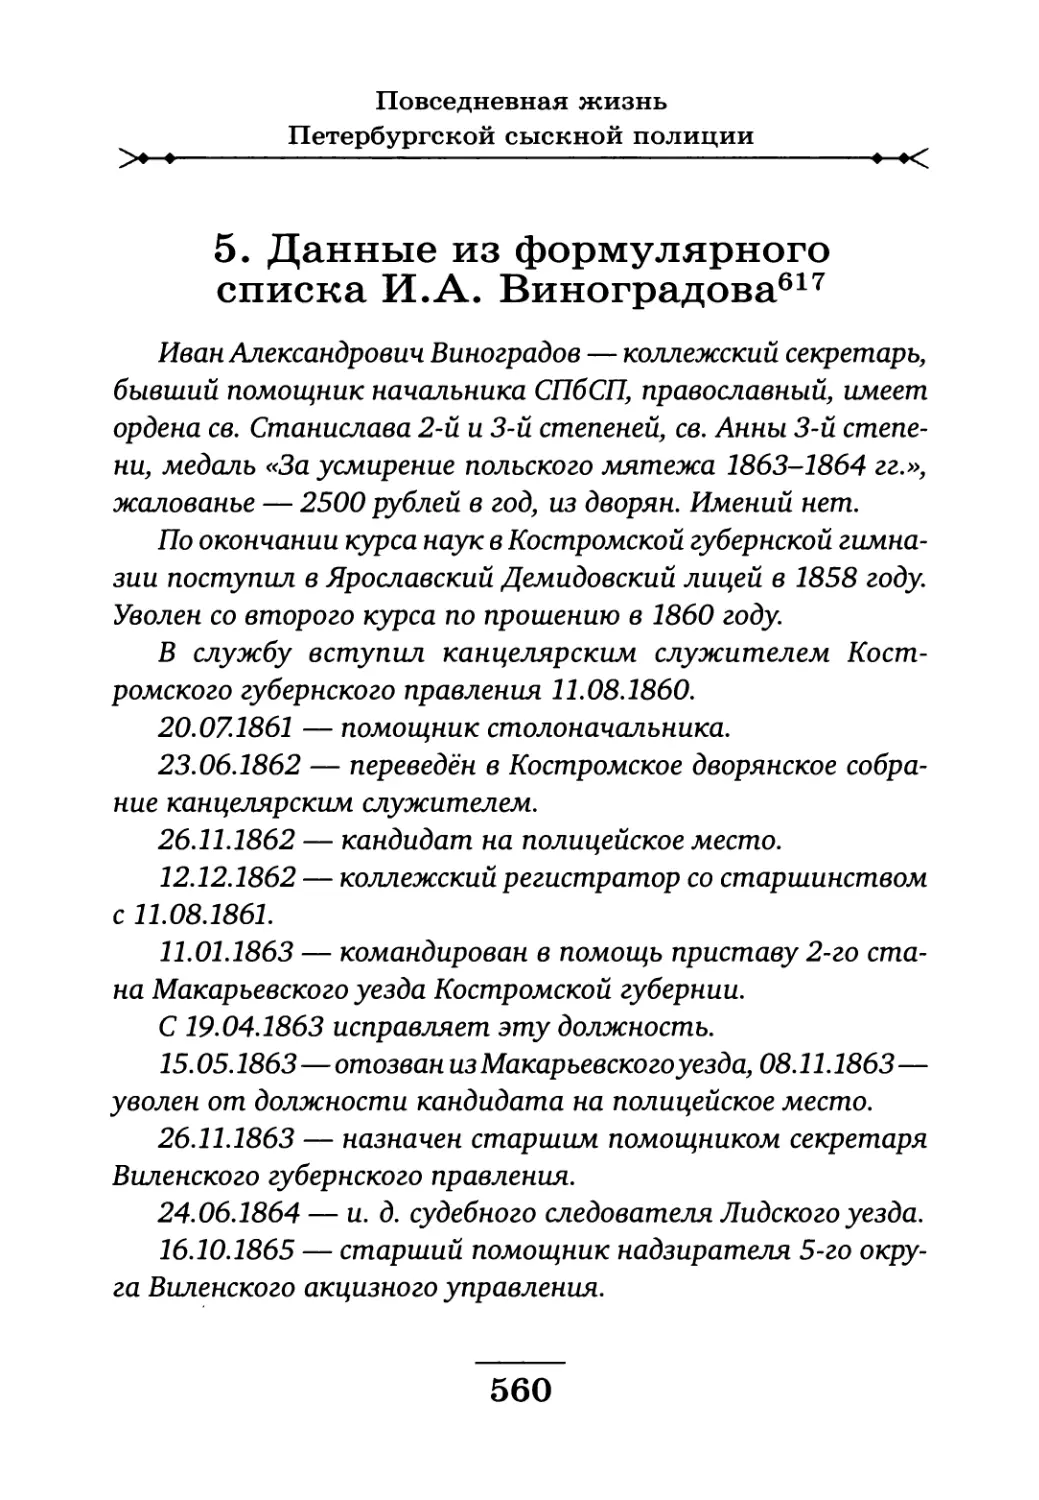 5. Данные из формулярного списка И.А. Виноградова